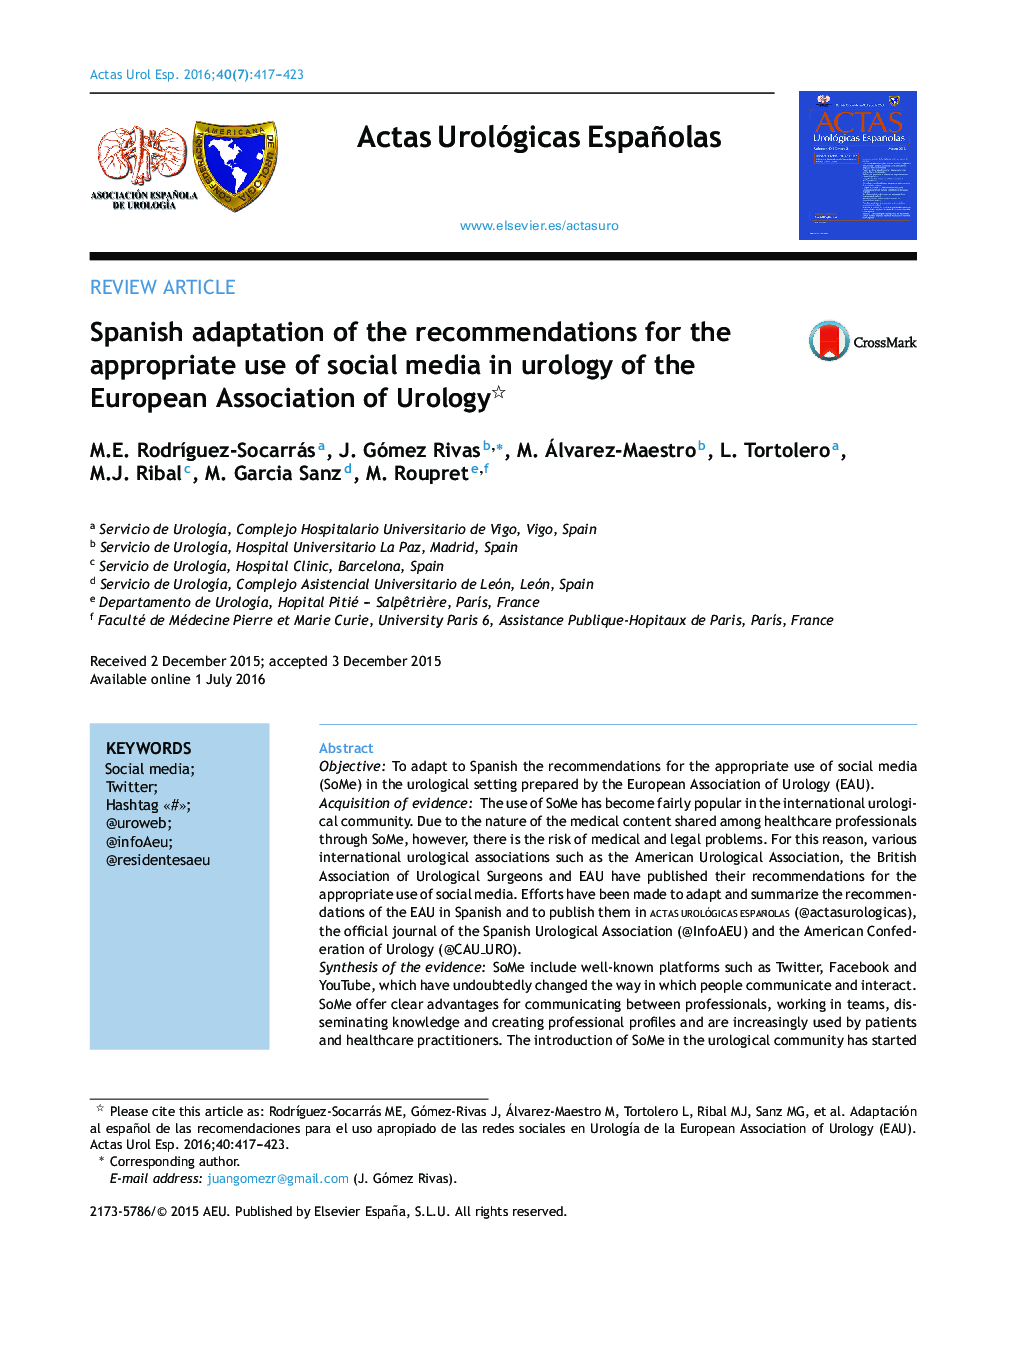 سازگاری اسپانیایی از توصیه ها برای استفاده مناسب از رسانه های اجتماعی در اورولوژی از انجمن اورولوژی اروپا 